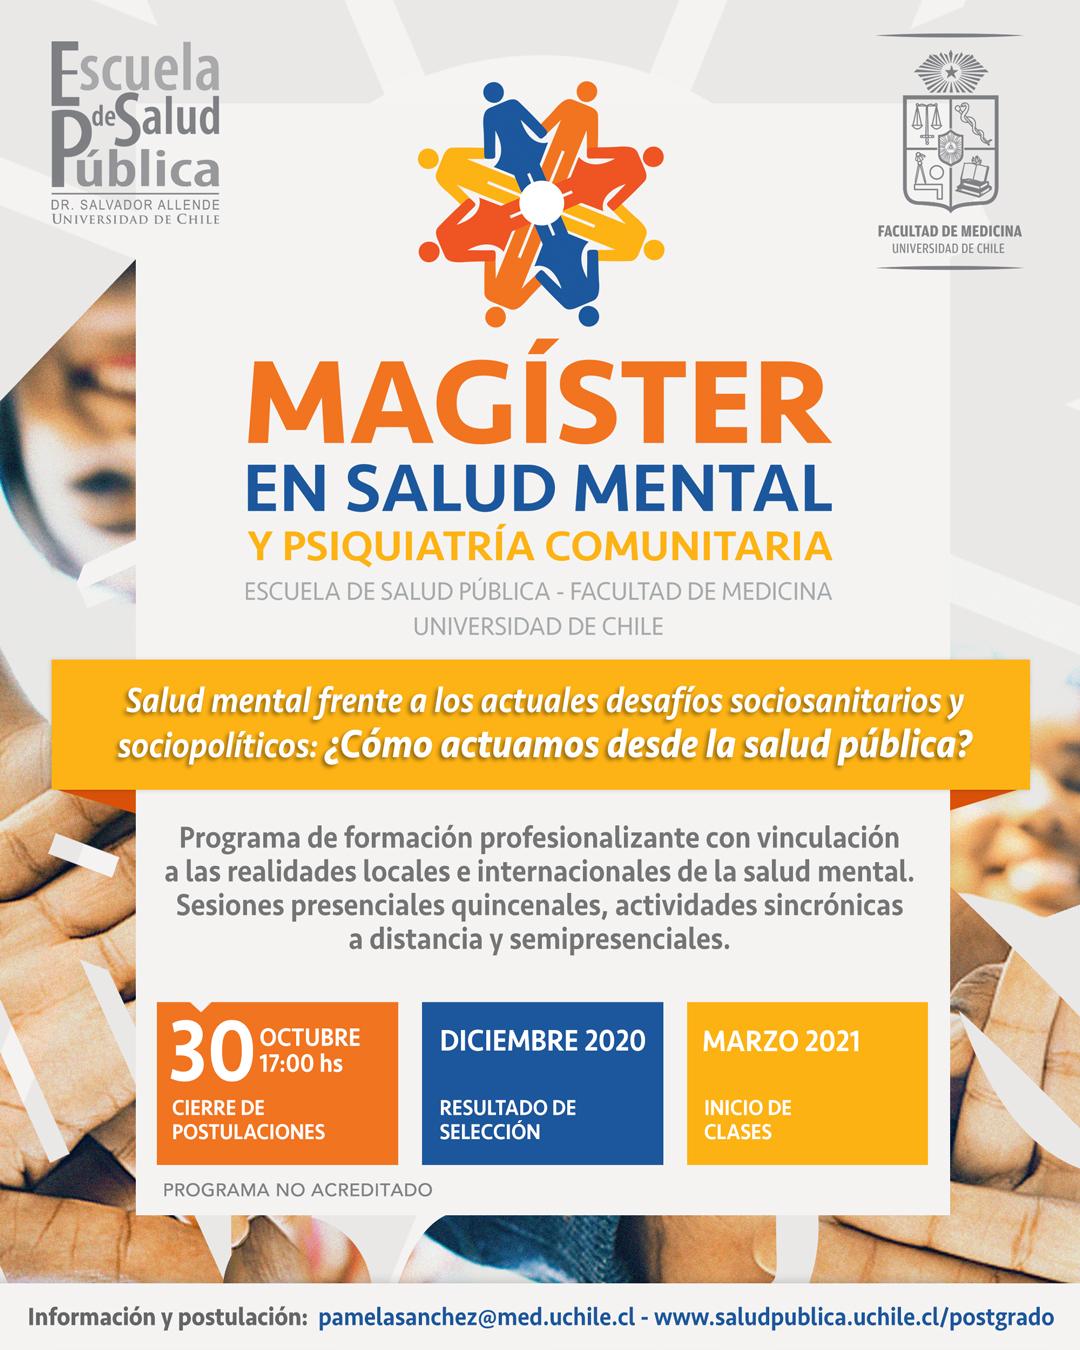 Por su parte el Magíster de Salud Mental y Psiquiatría Comunitaria, ha iniciado por primera vez su período de acreditación frente a la CNA.